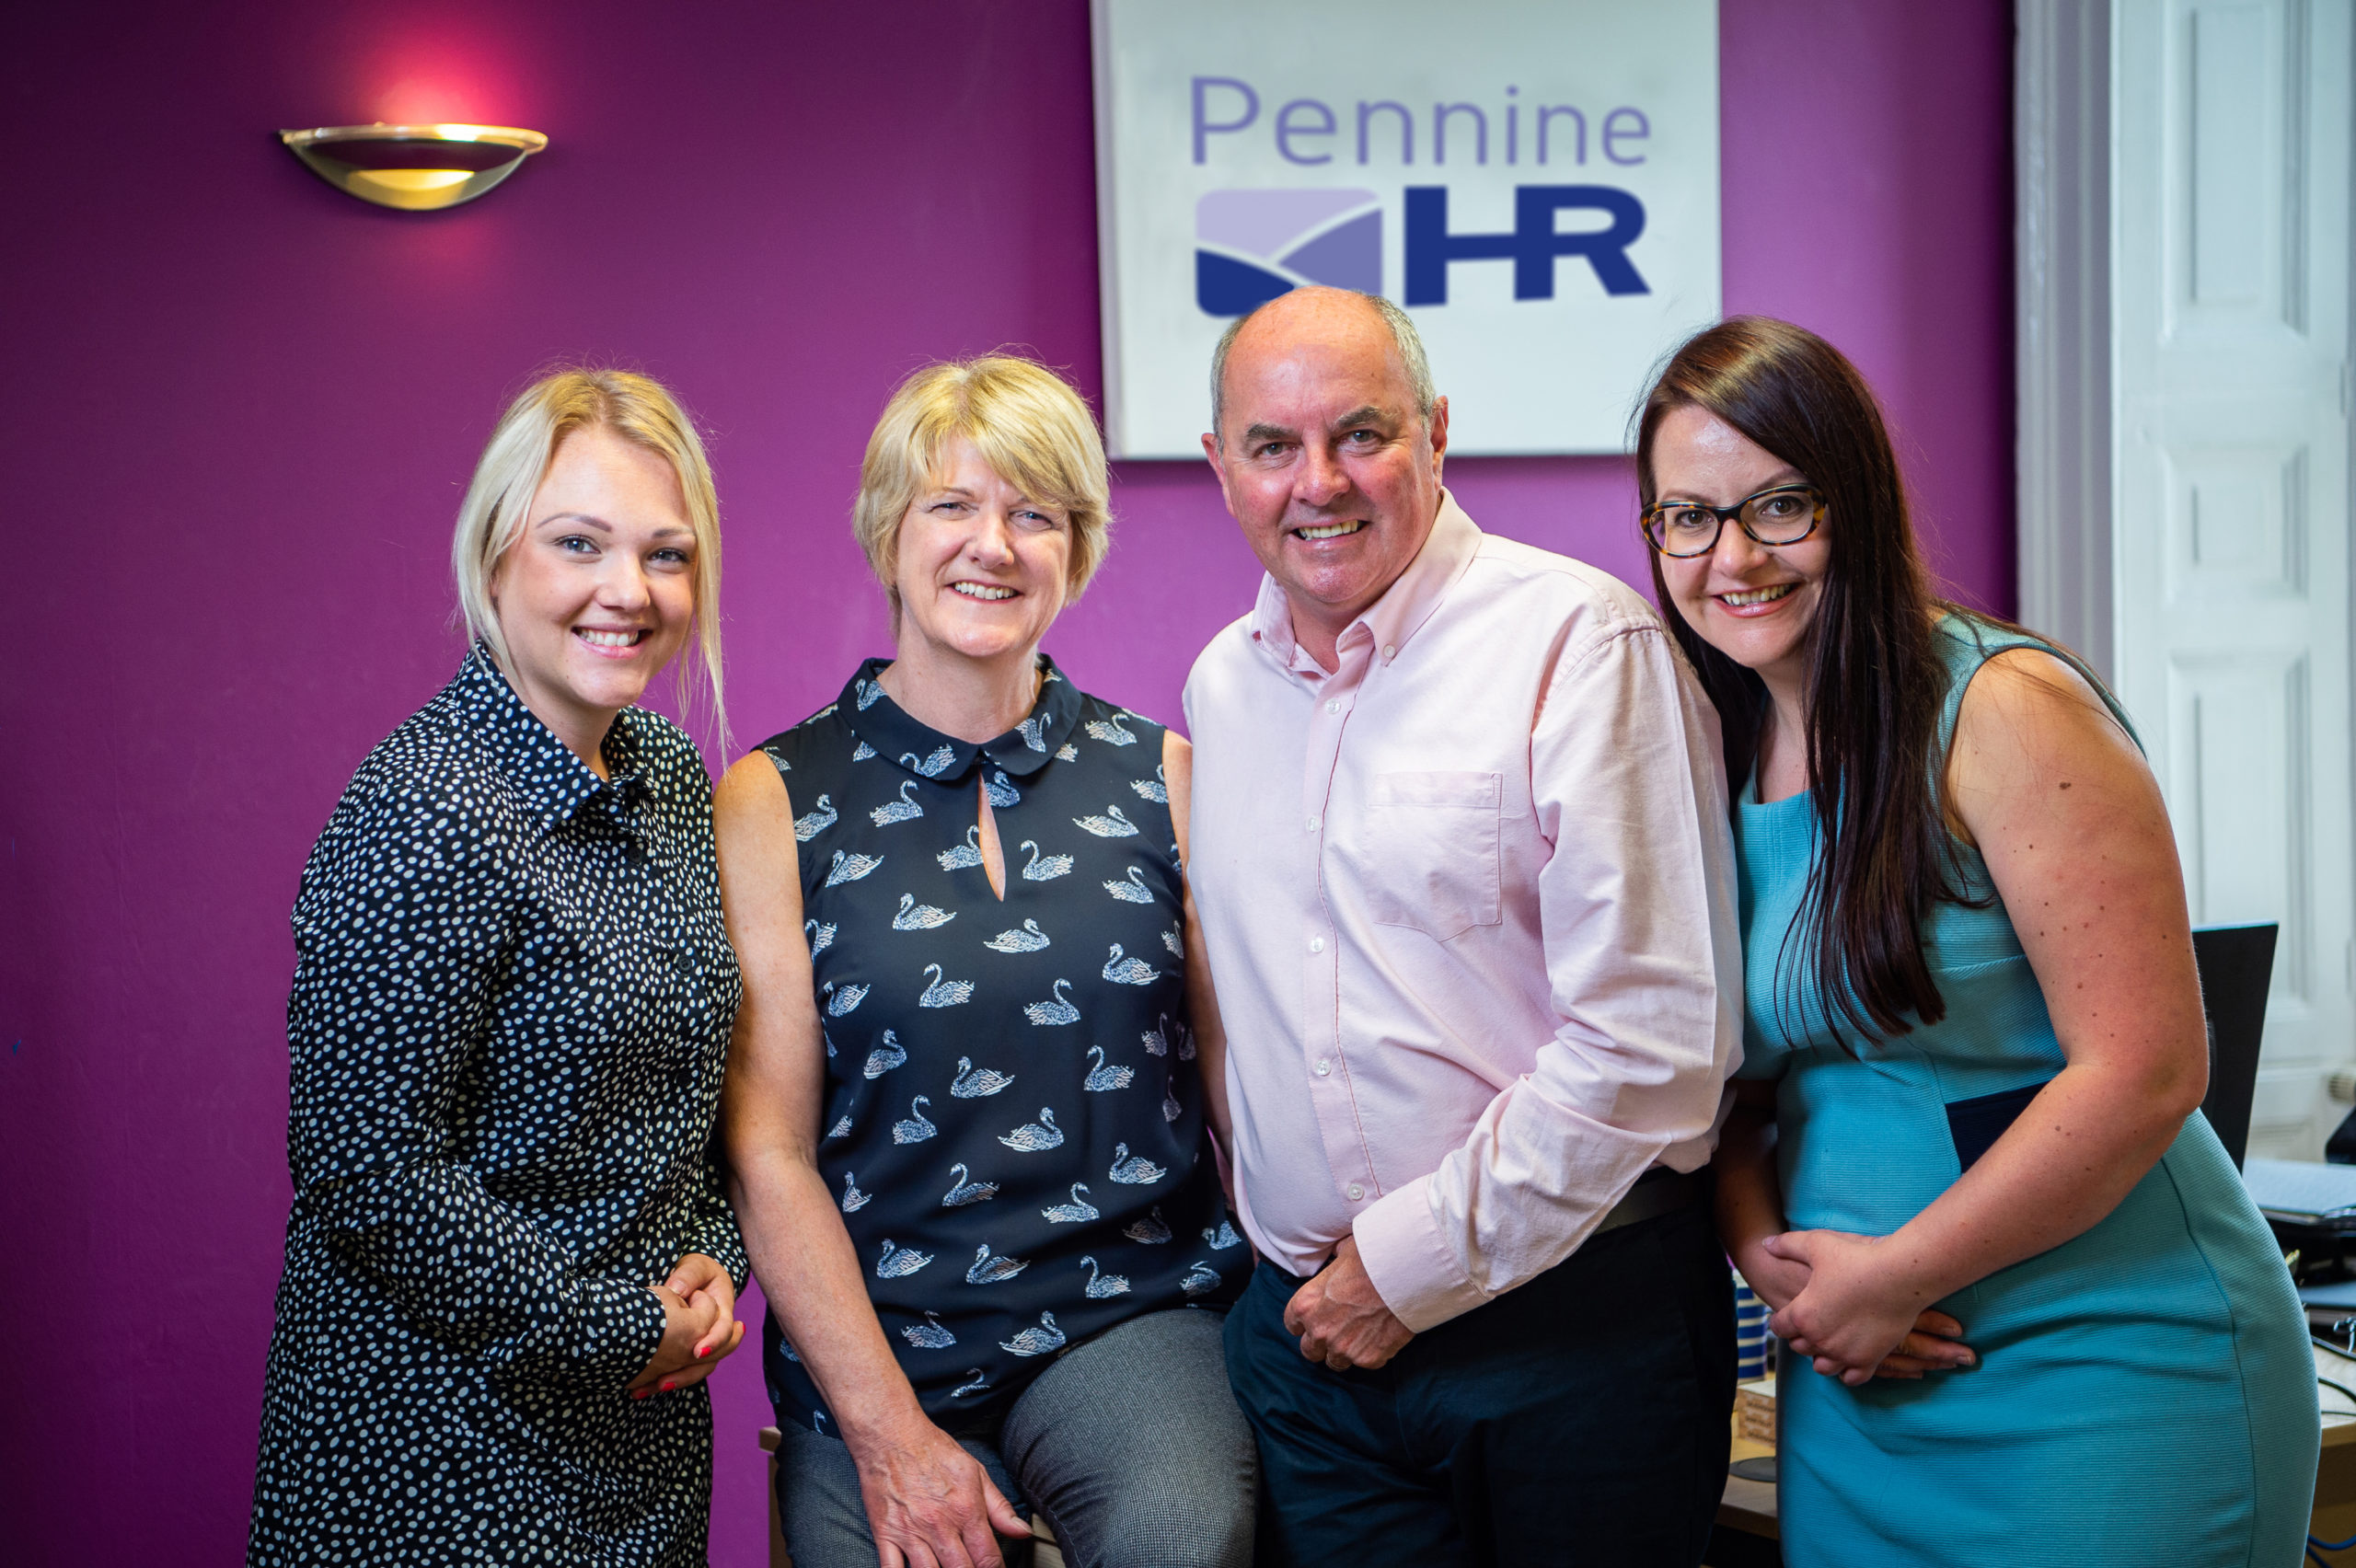 Pennine HR team photo